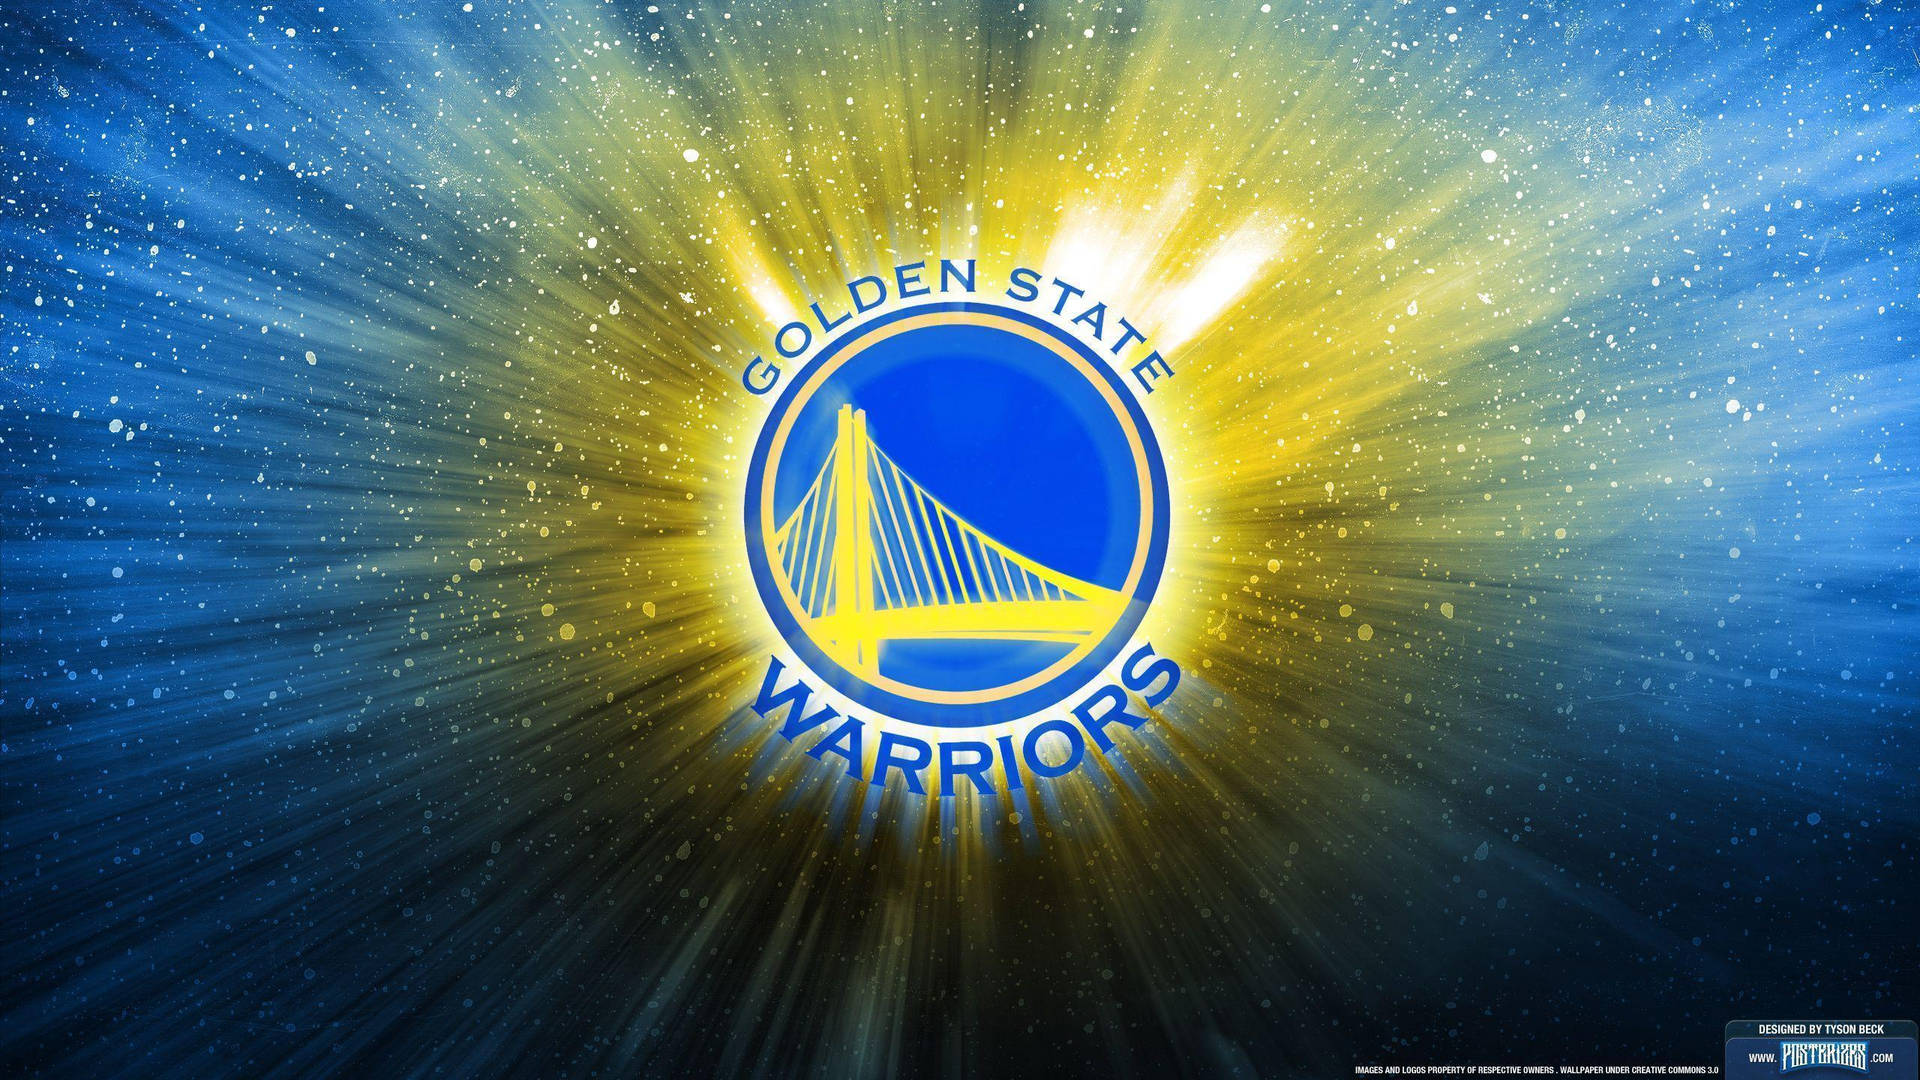 Golden State Warriors NBA Team Poster Wallpaper